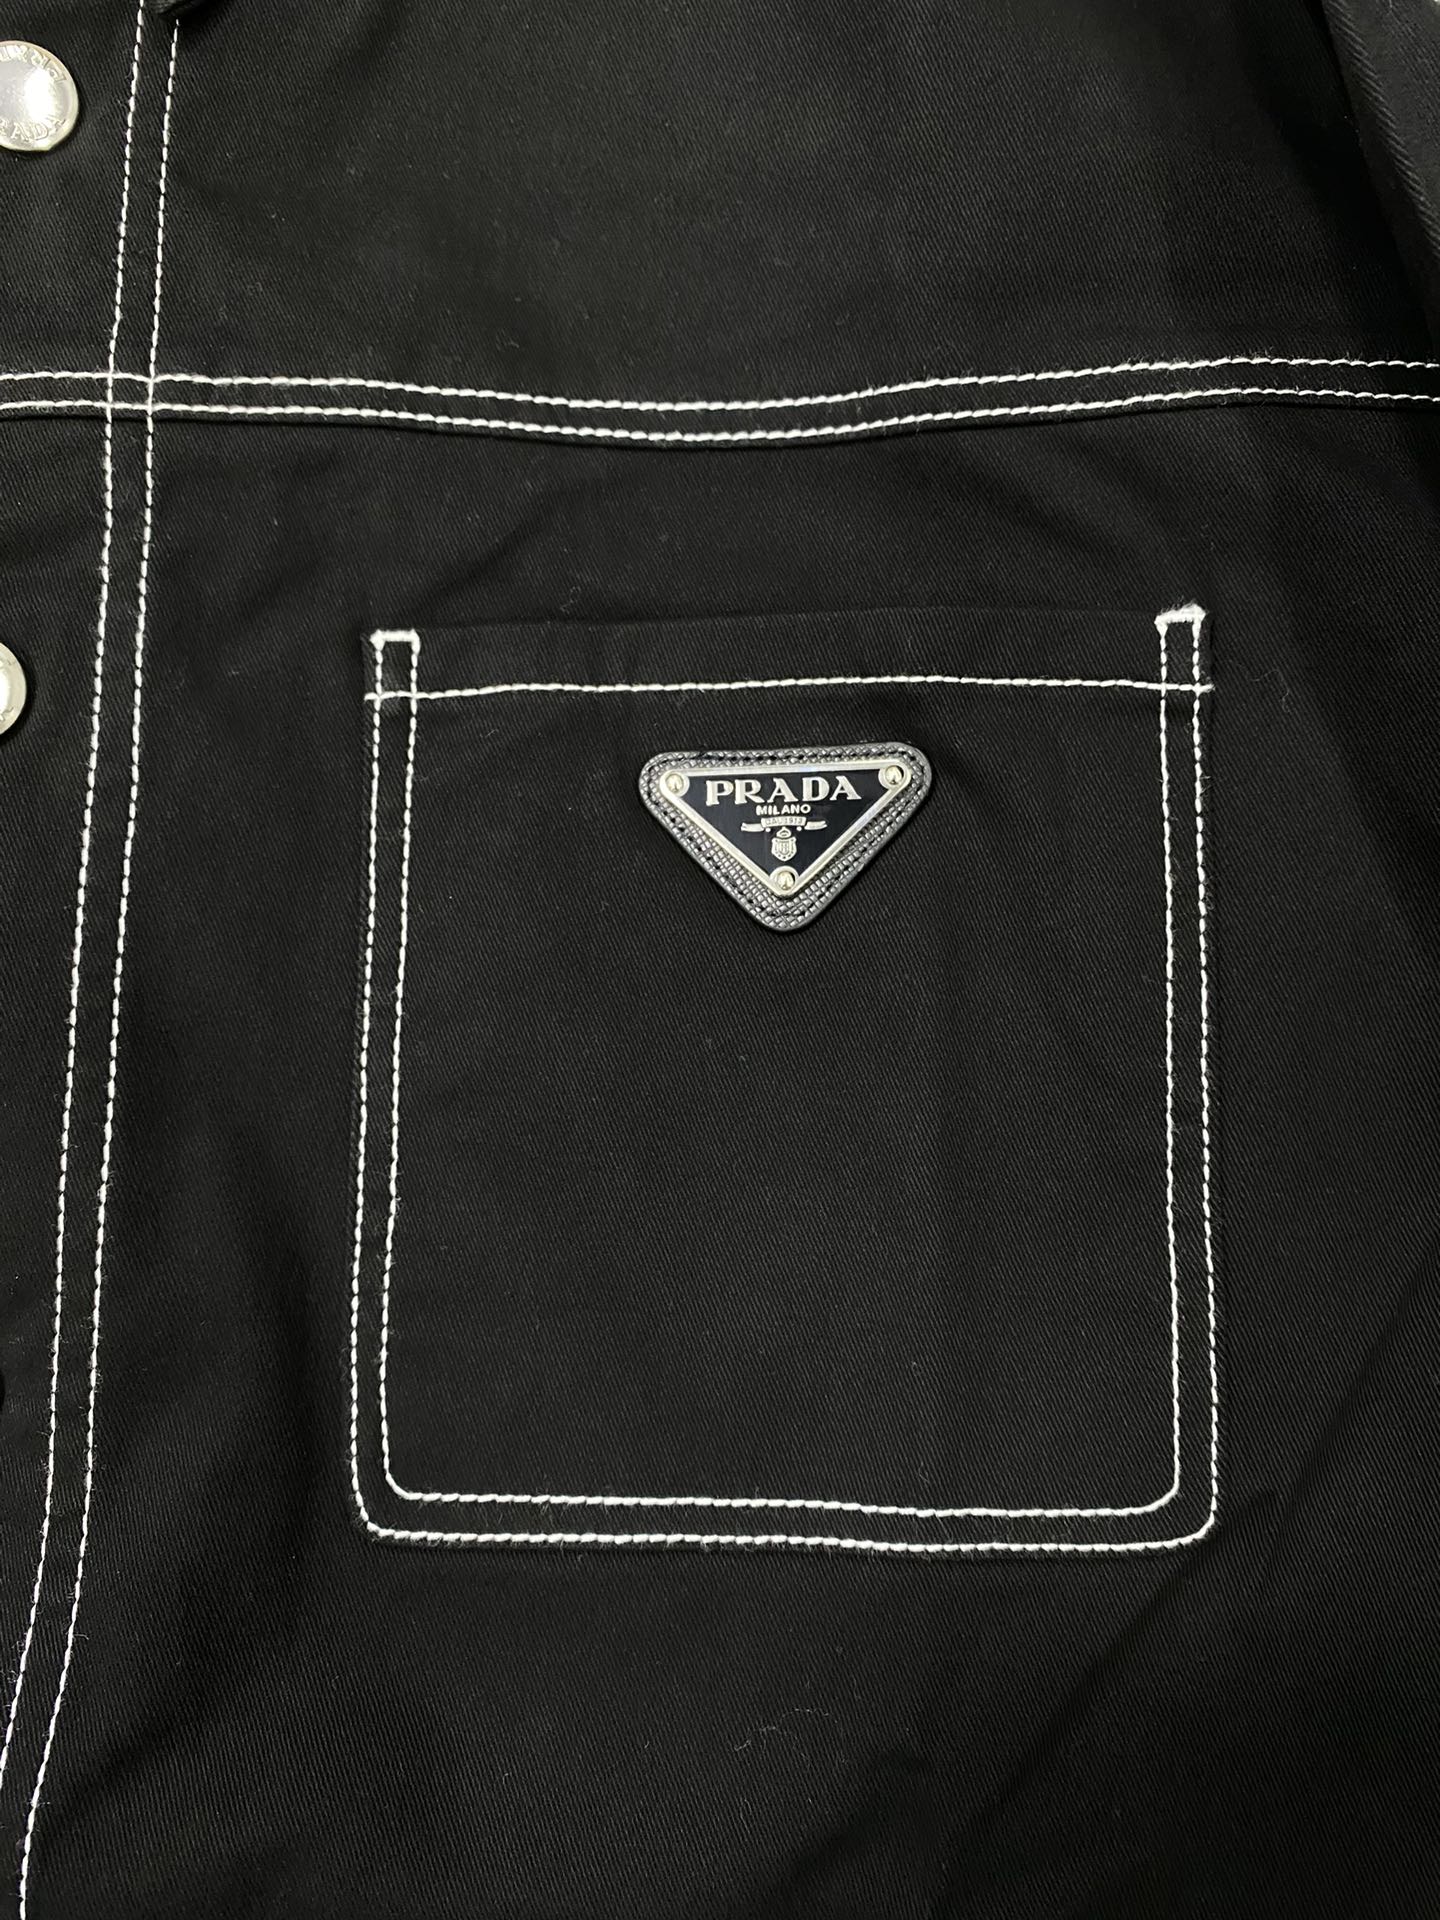 TJ셀러 / 프라다 메탈 트라이앵글 스트레치 코튼 셔츠 재킷